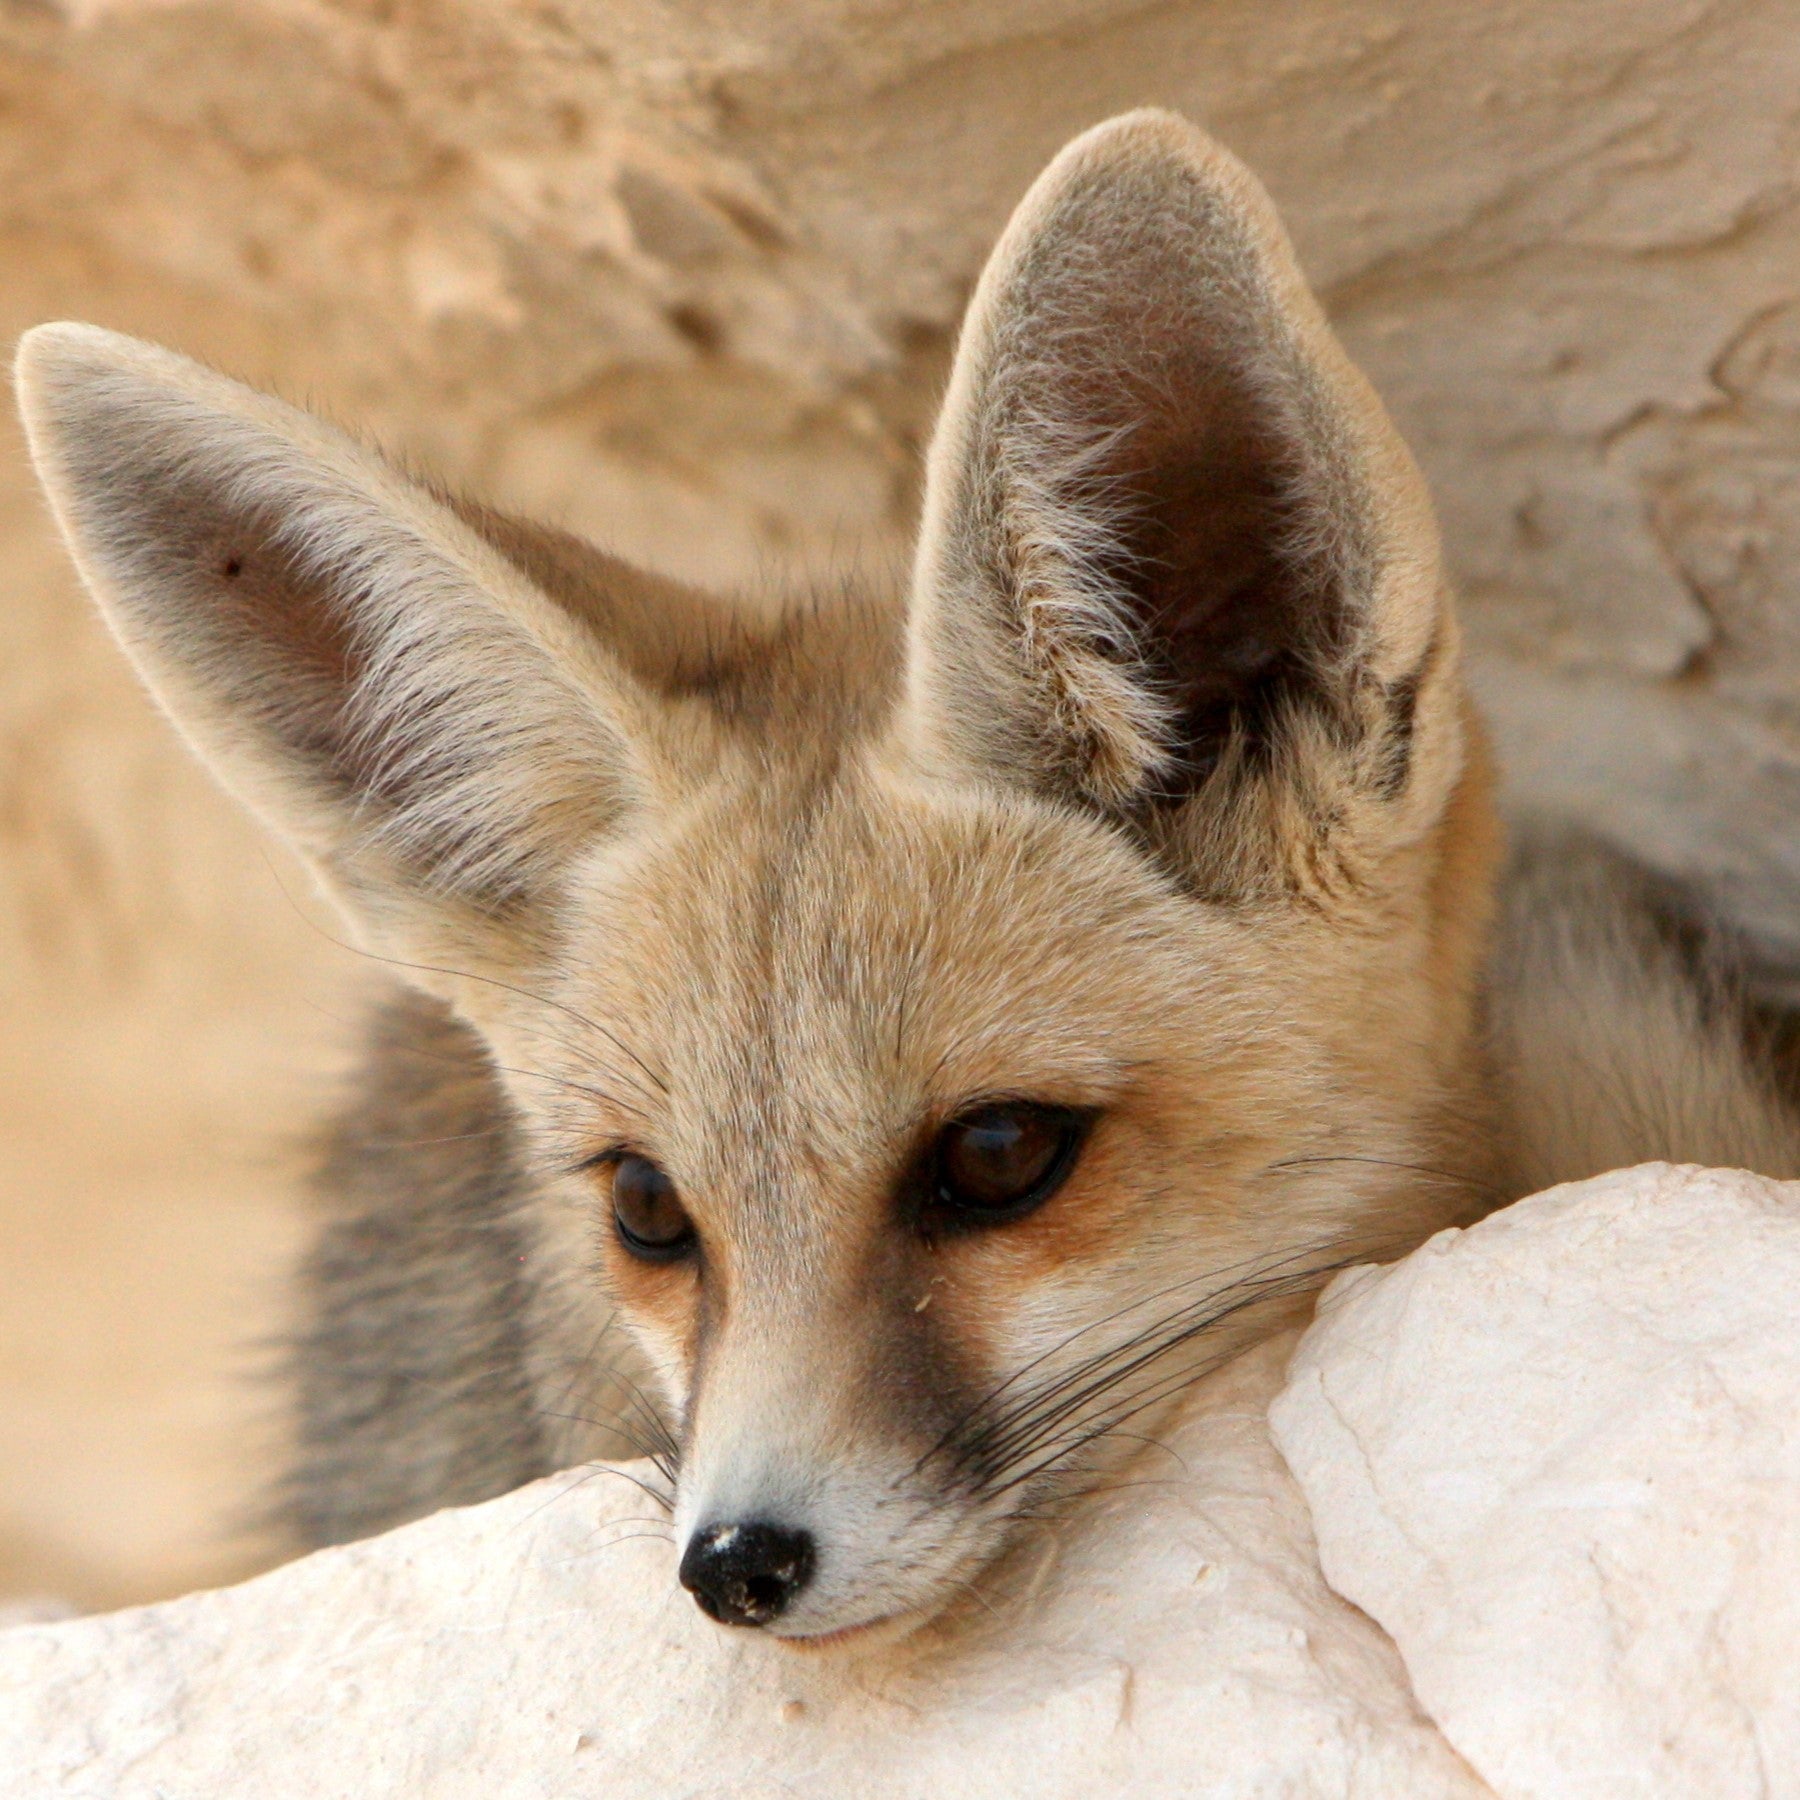 Fennec fox - WWF-Canada